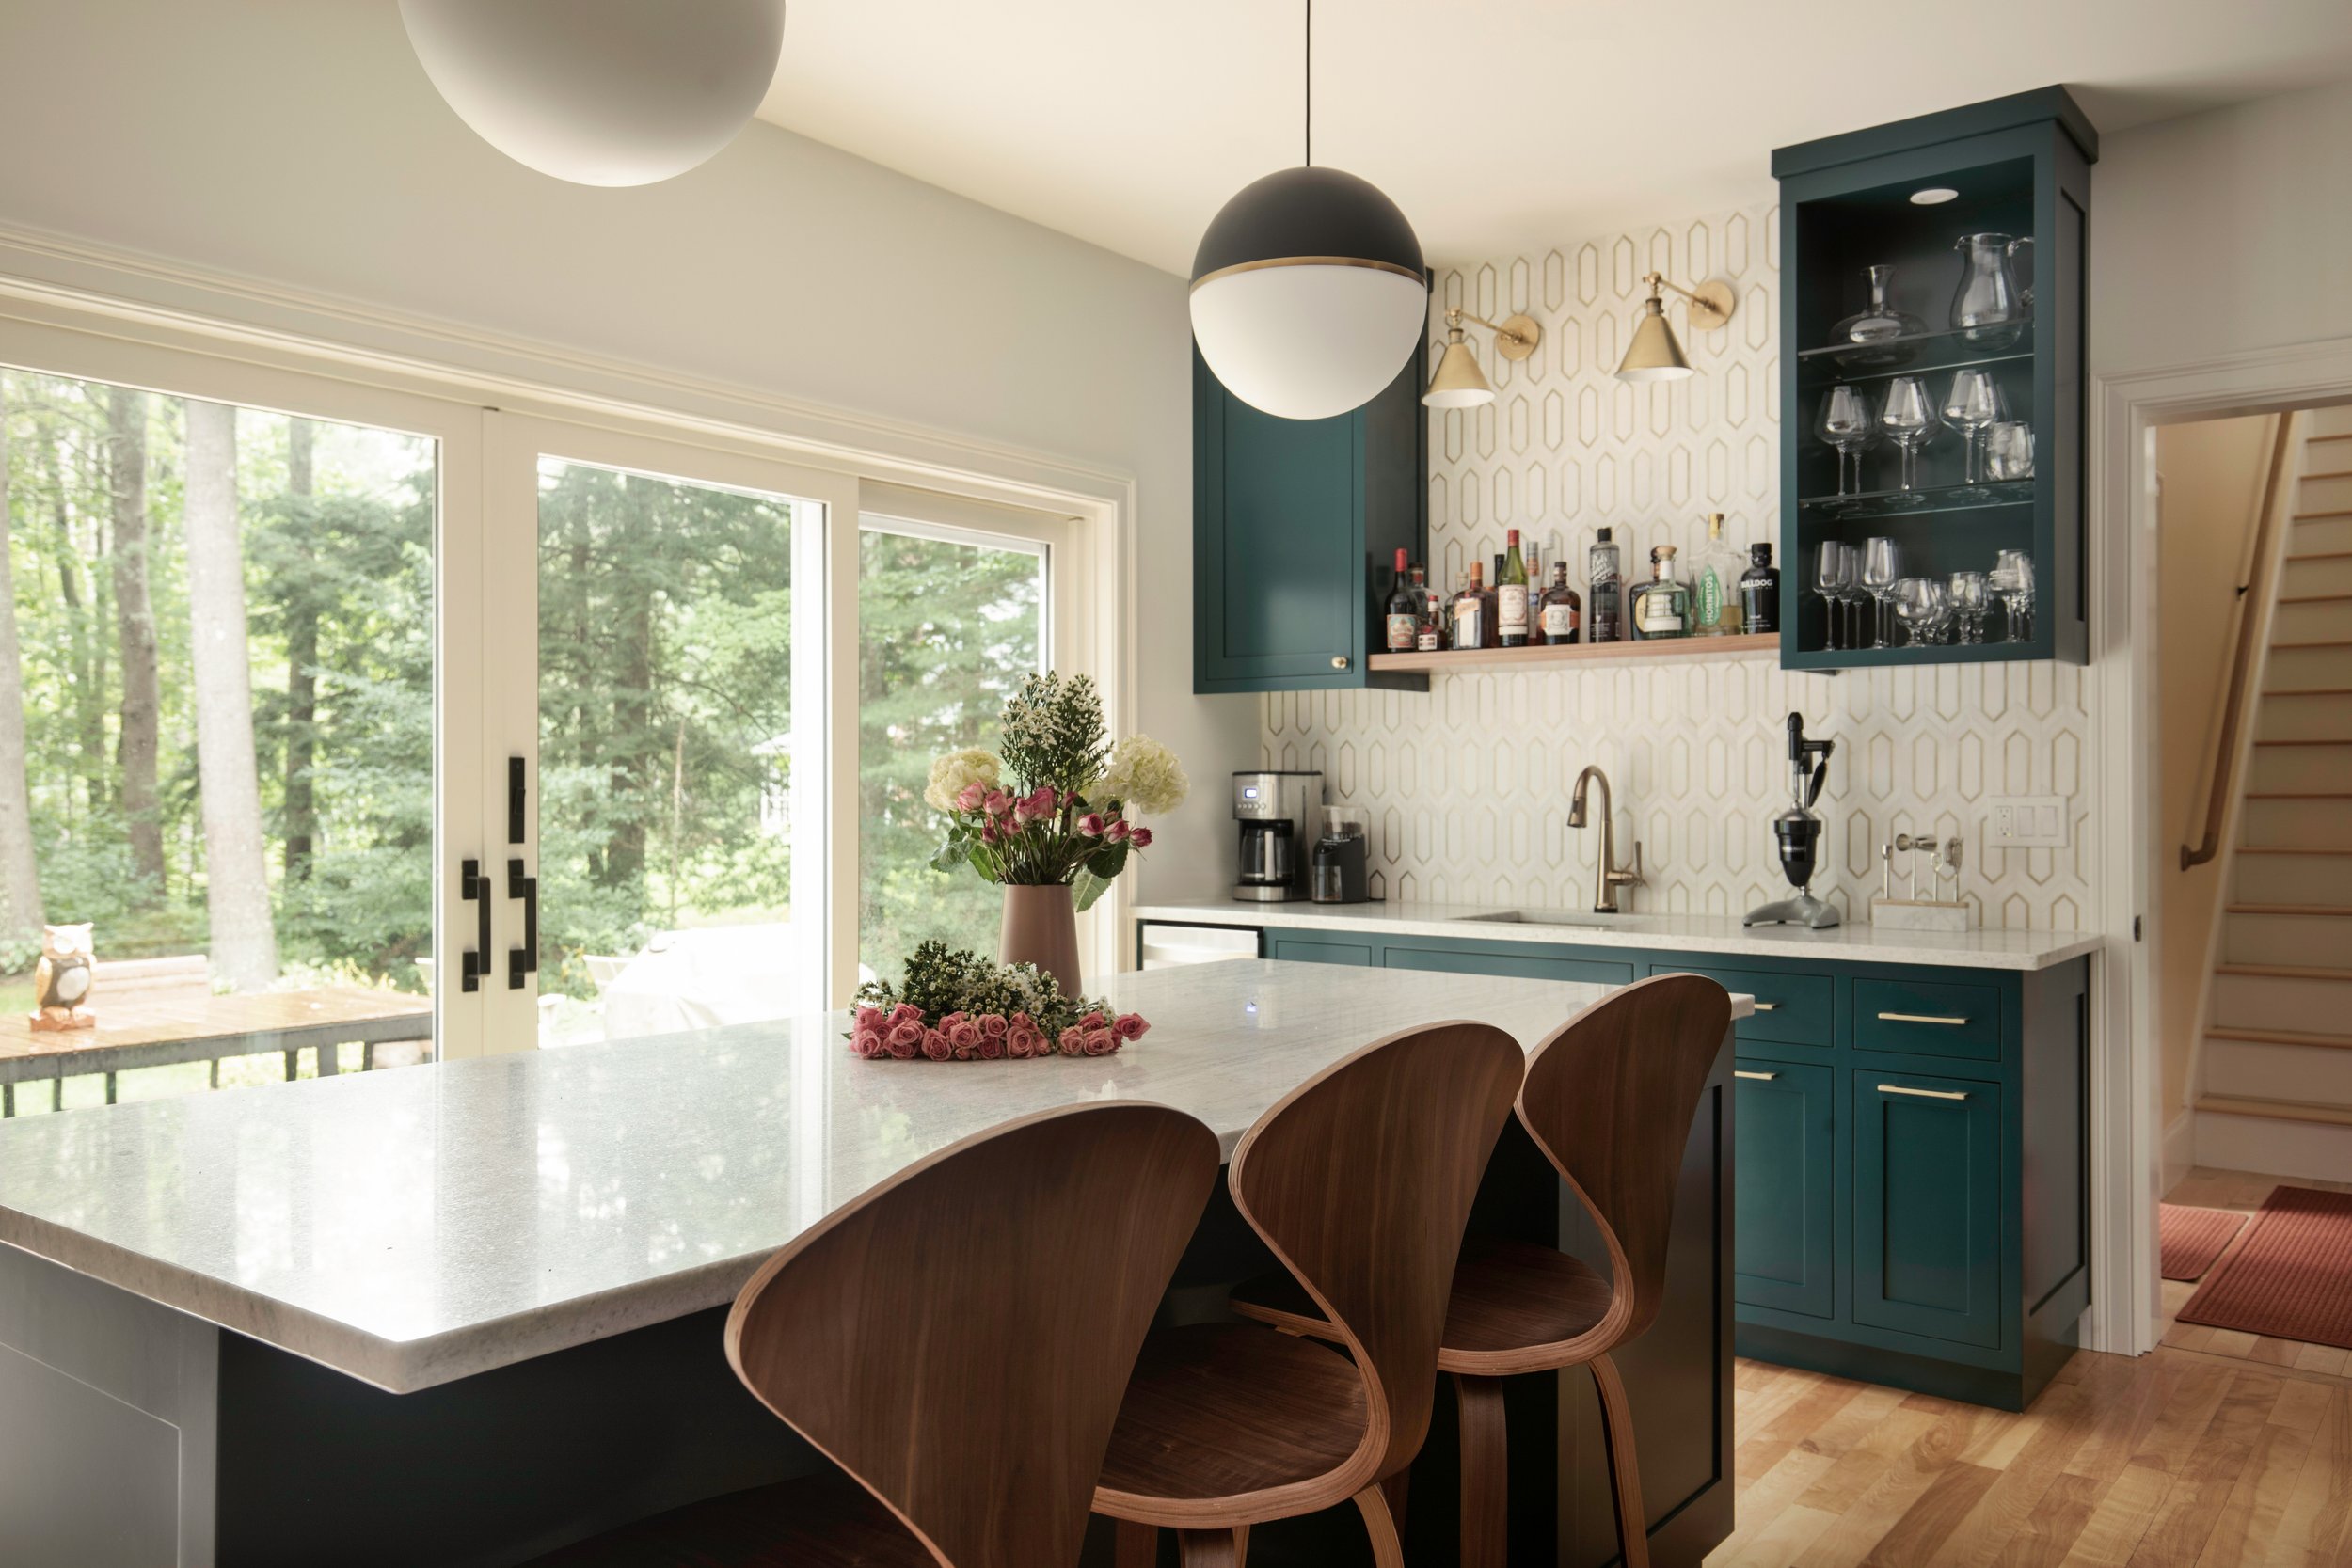 Hayrunner Emerald Kitchen Interior Design © Heidi Kirn Photography10593.jpg